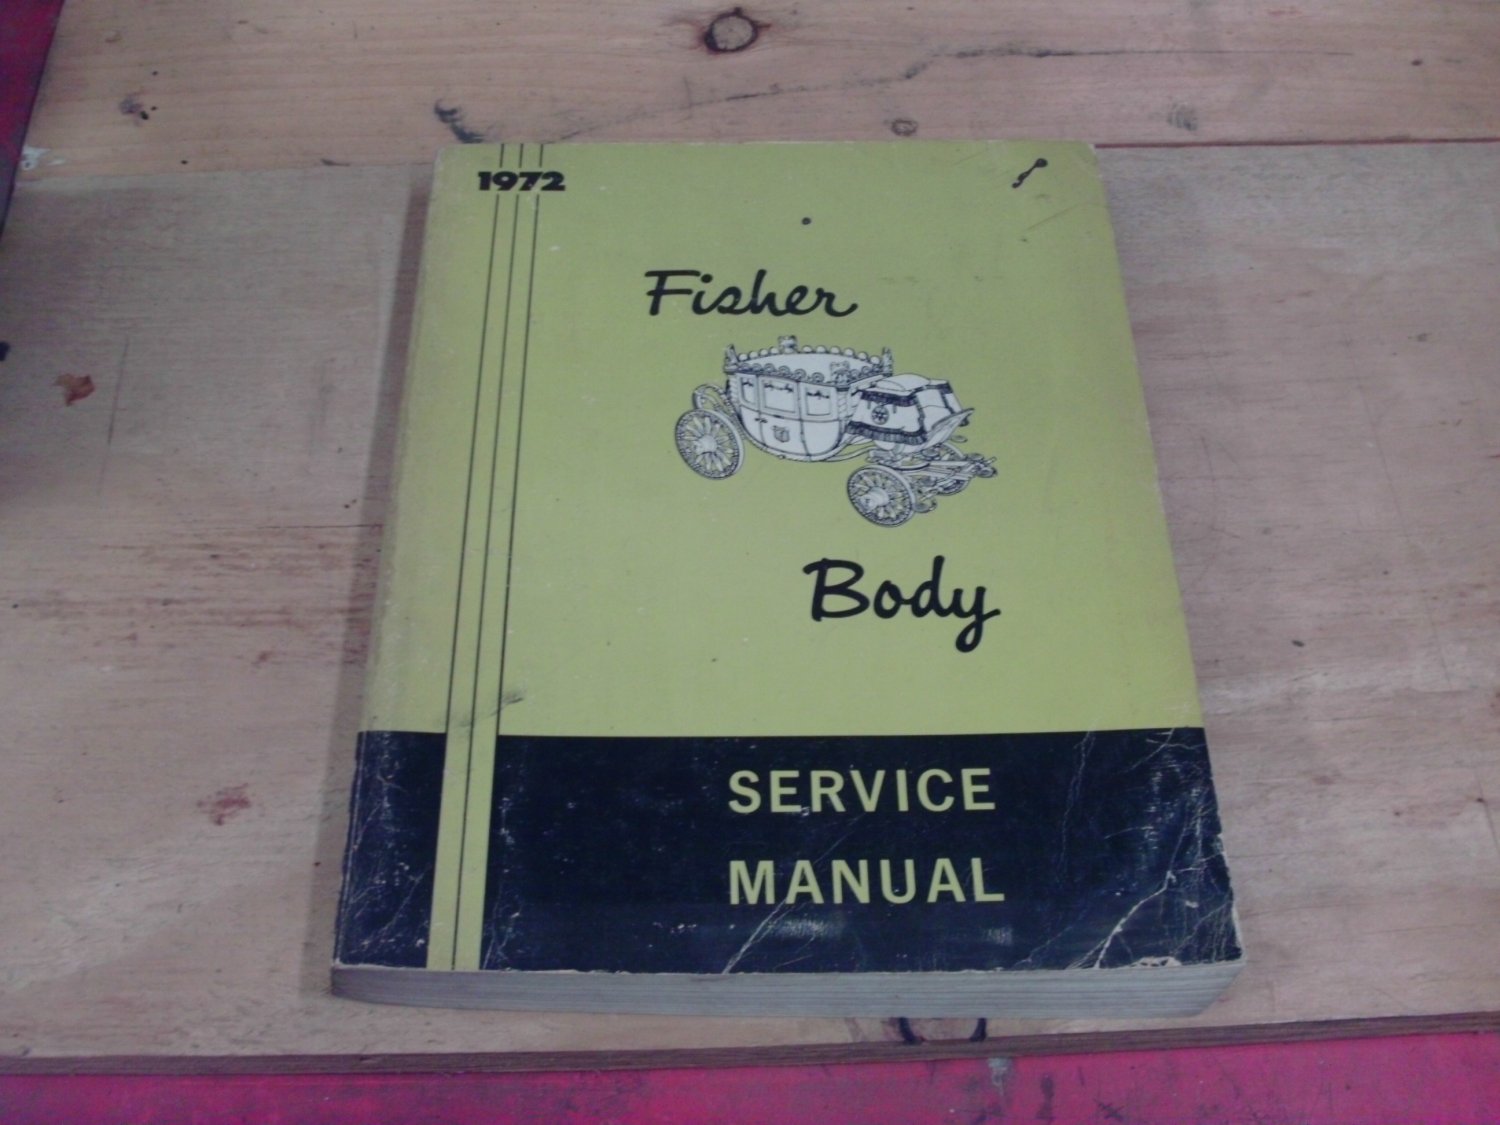 Used 1972 General Motors Fisher Body Manual